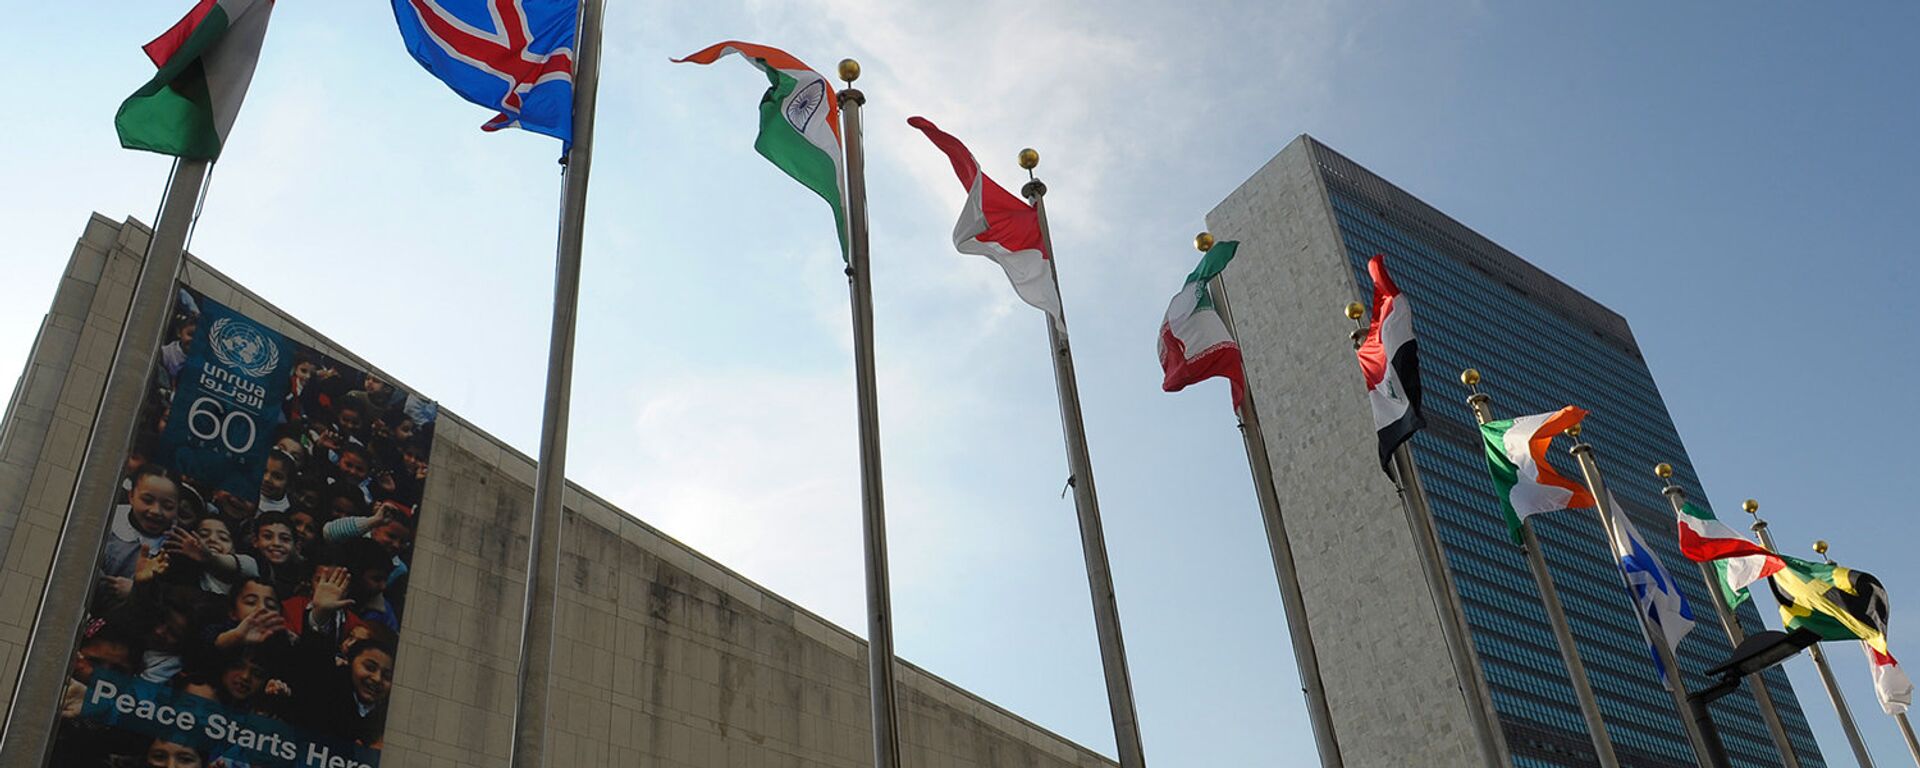 Здание ООН в Нью-Йорке - Sputnik Узбекистан, 1920, 21.10.2021